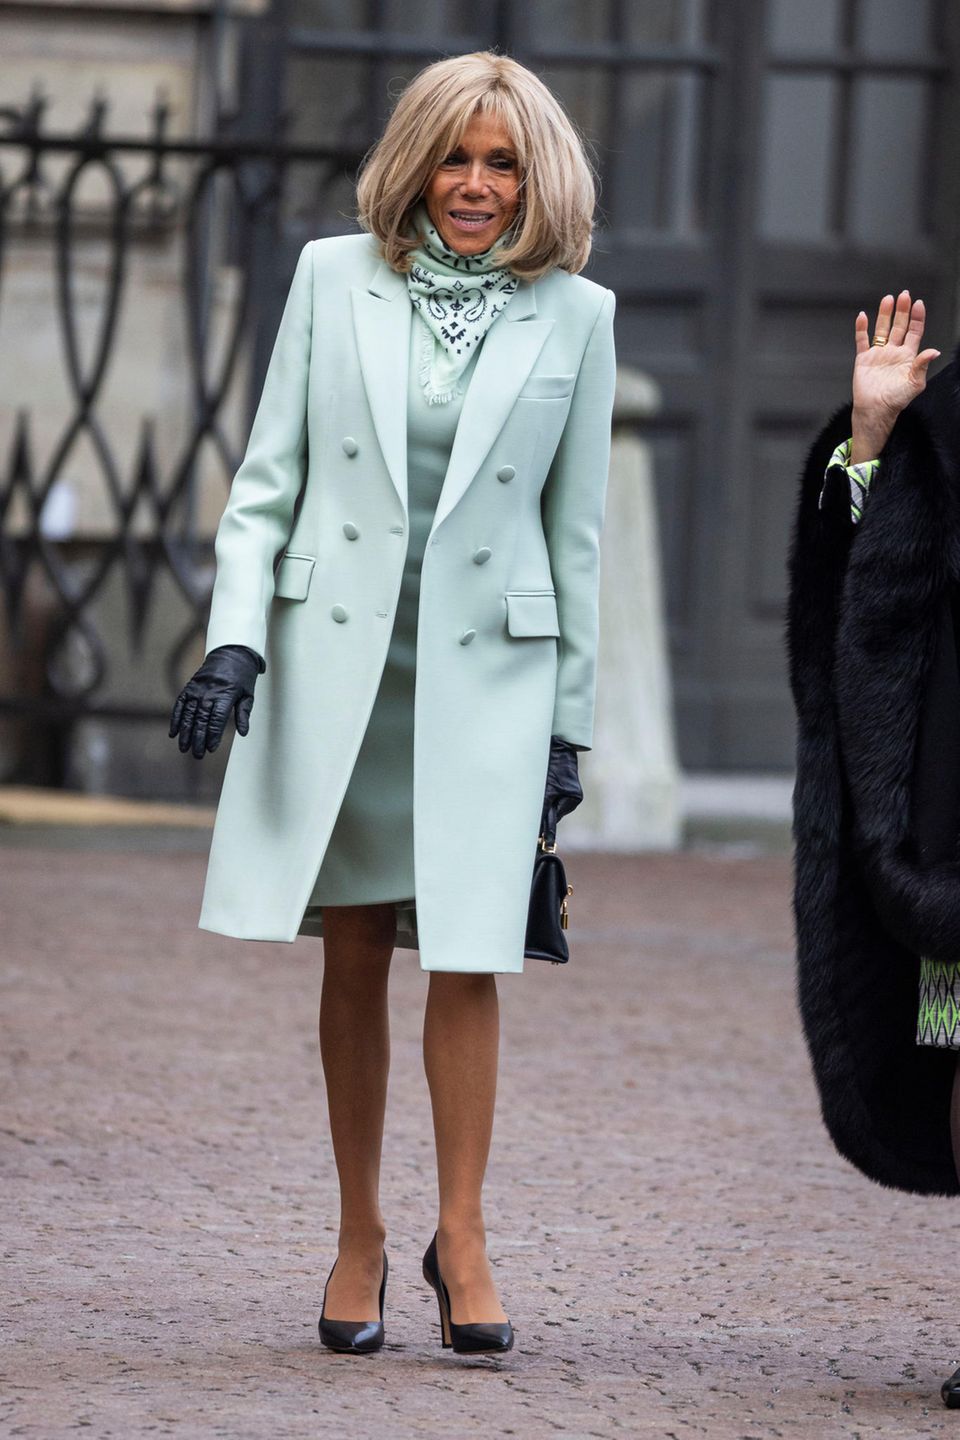 Brigitte Macron strahlt im stylischen Ton-inTon-Look auf dem Weg zum schwedischen Palast in Stockholm. Ihr Outfit besteht aus einem taillierten Mantel, einem Kleid und einem Halstuch – alles fabrlich perfekt abgestimmt. Nur ihre spitzen Pumps sowie ihre Handschuhe sorgen für einen kleinen farblichen Kontrast.